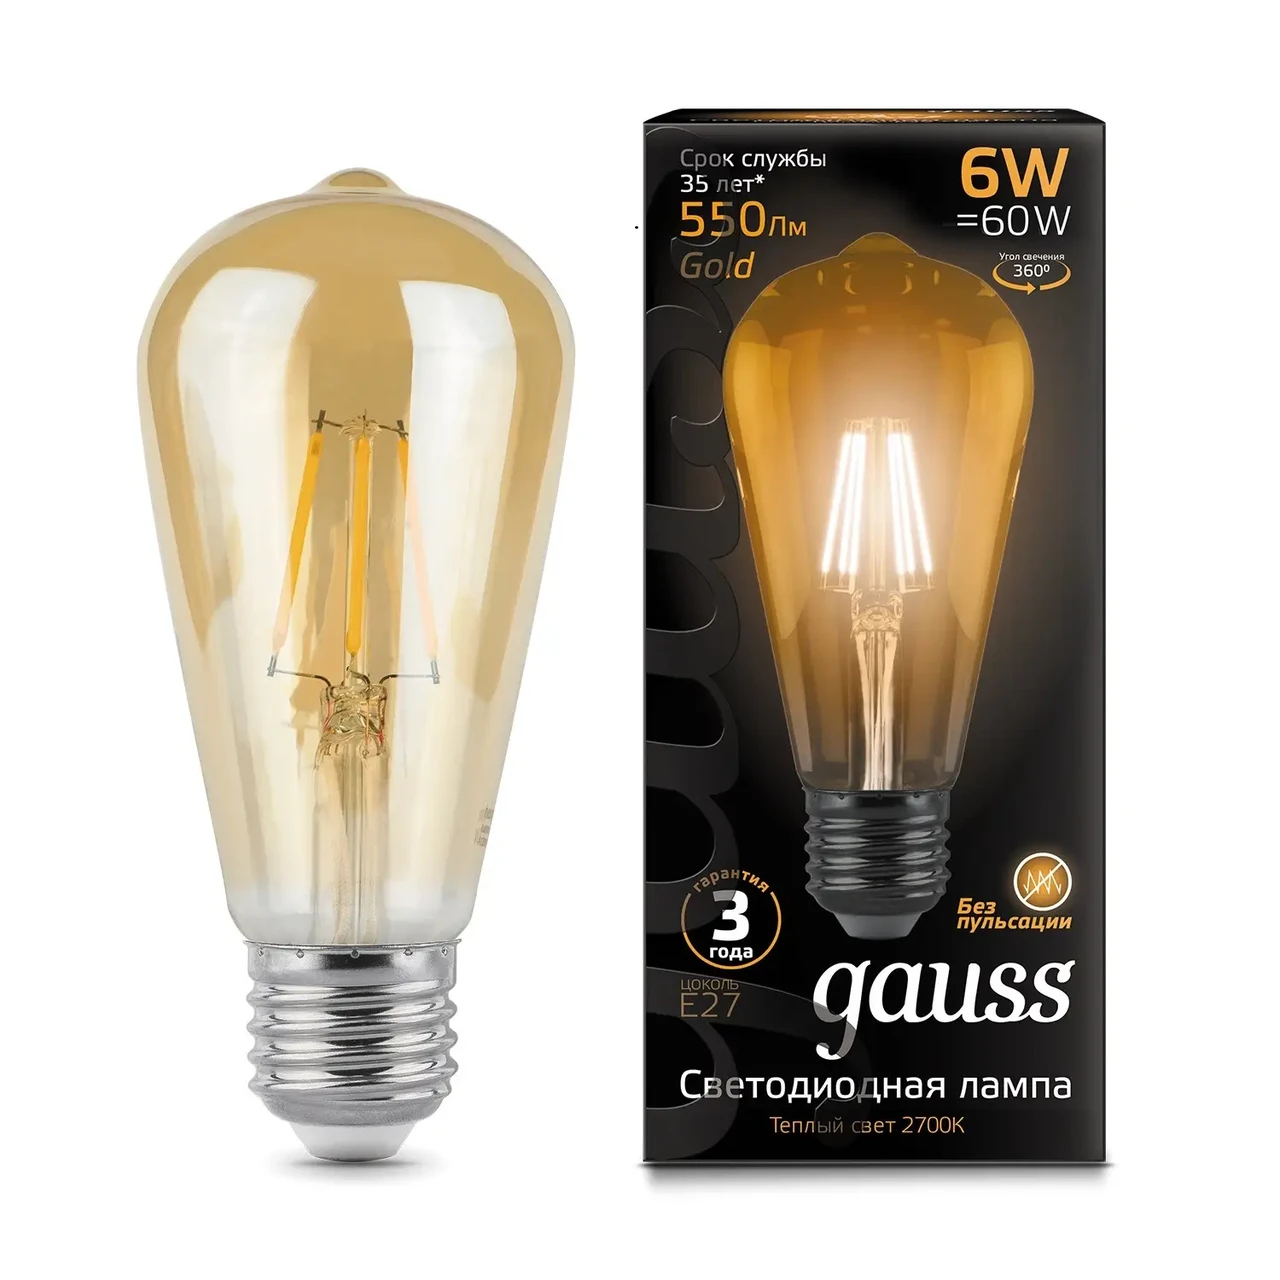 Лампа Gauss Filament ST64 6W 550lm 2400К E27 golden LED 1/10/40, фото 1